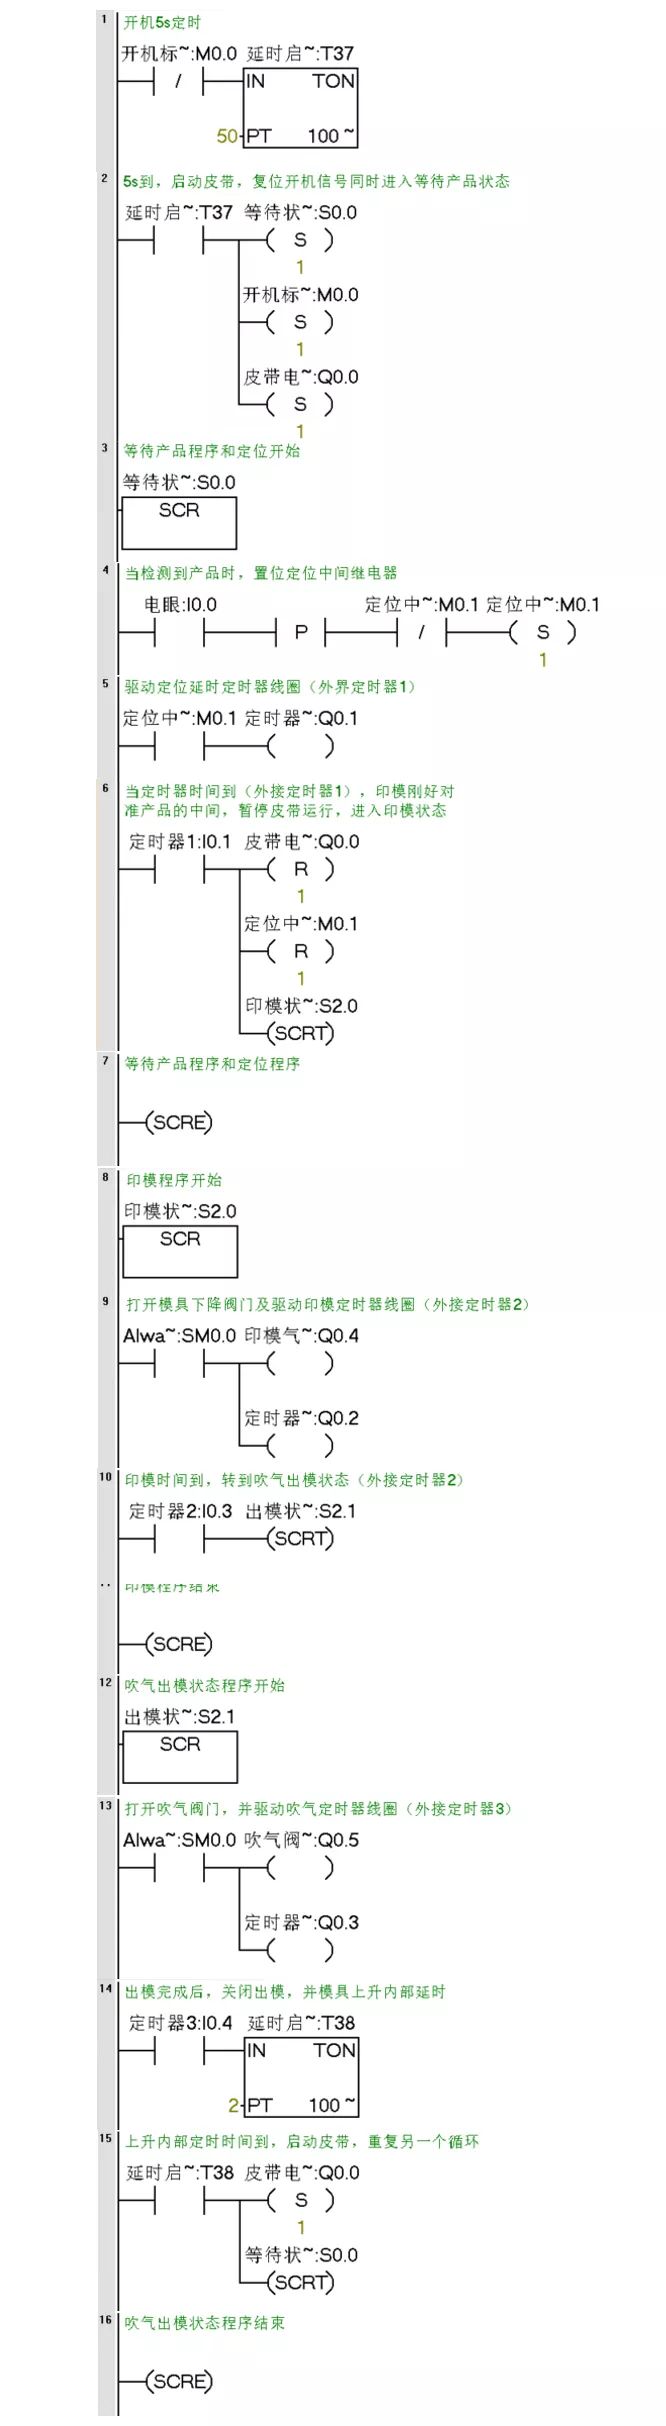 西门子PLC编程实例分析,739a6734-05da-11ed-ba43-dac502259ad0.jpg,第7张